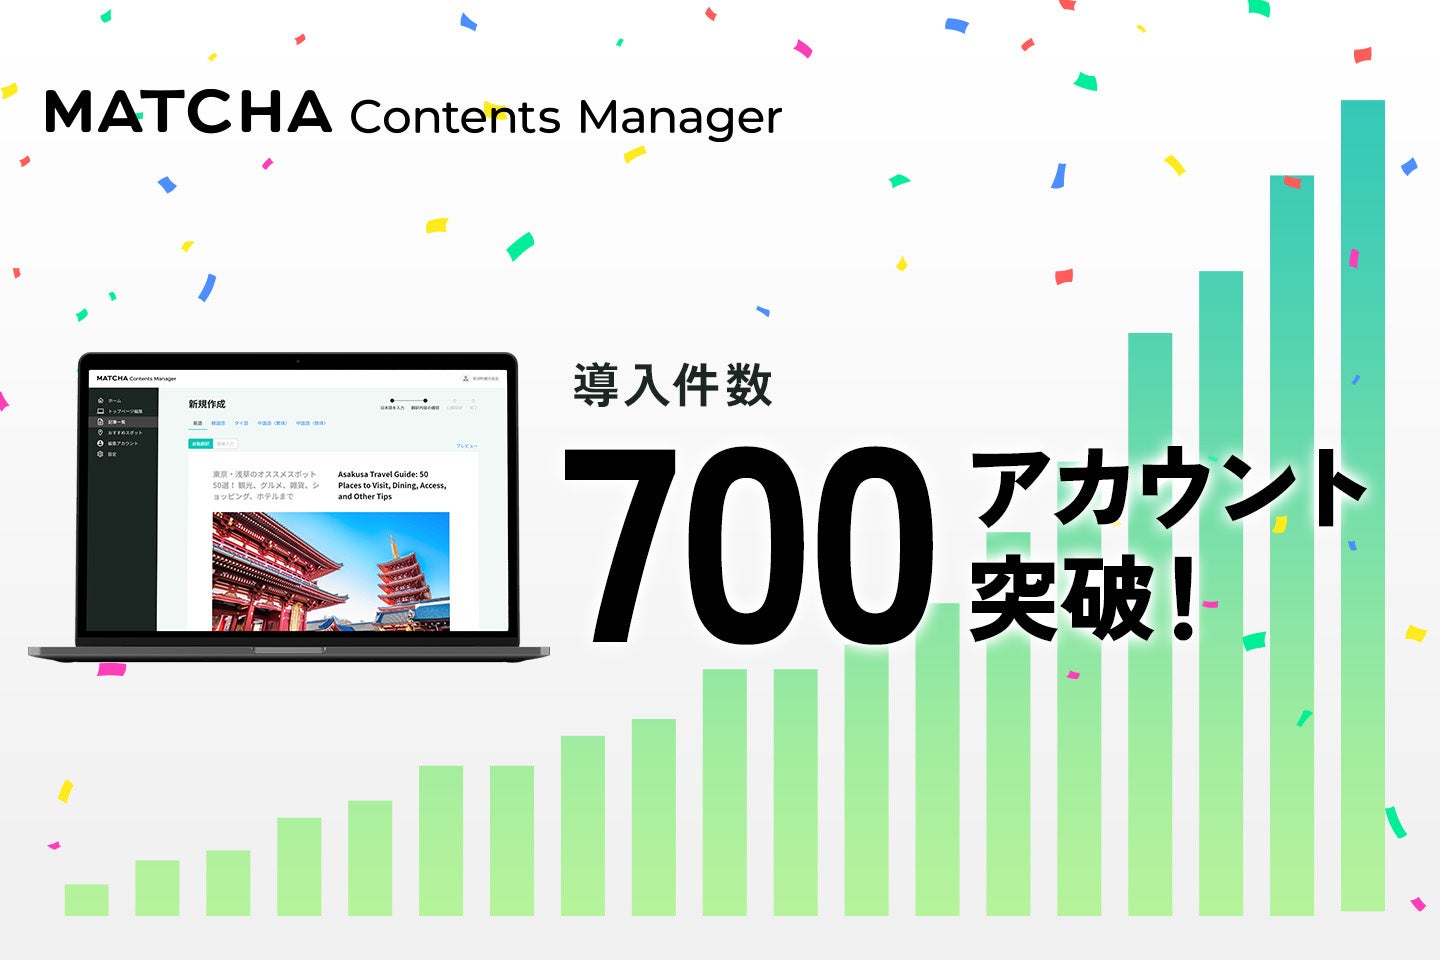 国内最大級のインバウンド向け多言語CMS「MATCHA Contents Manager」の導入件数が700件を突破